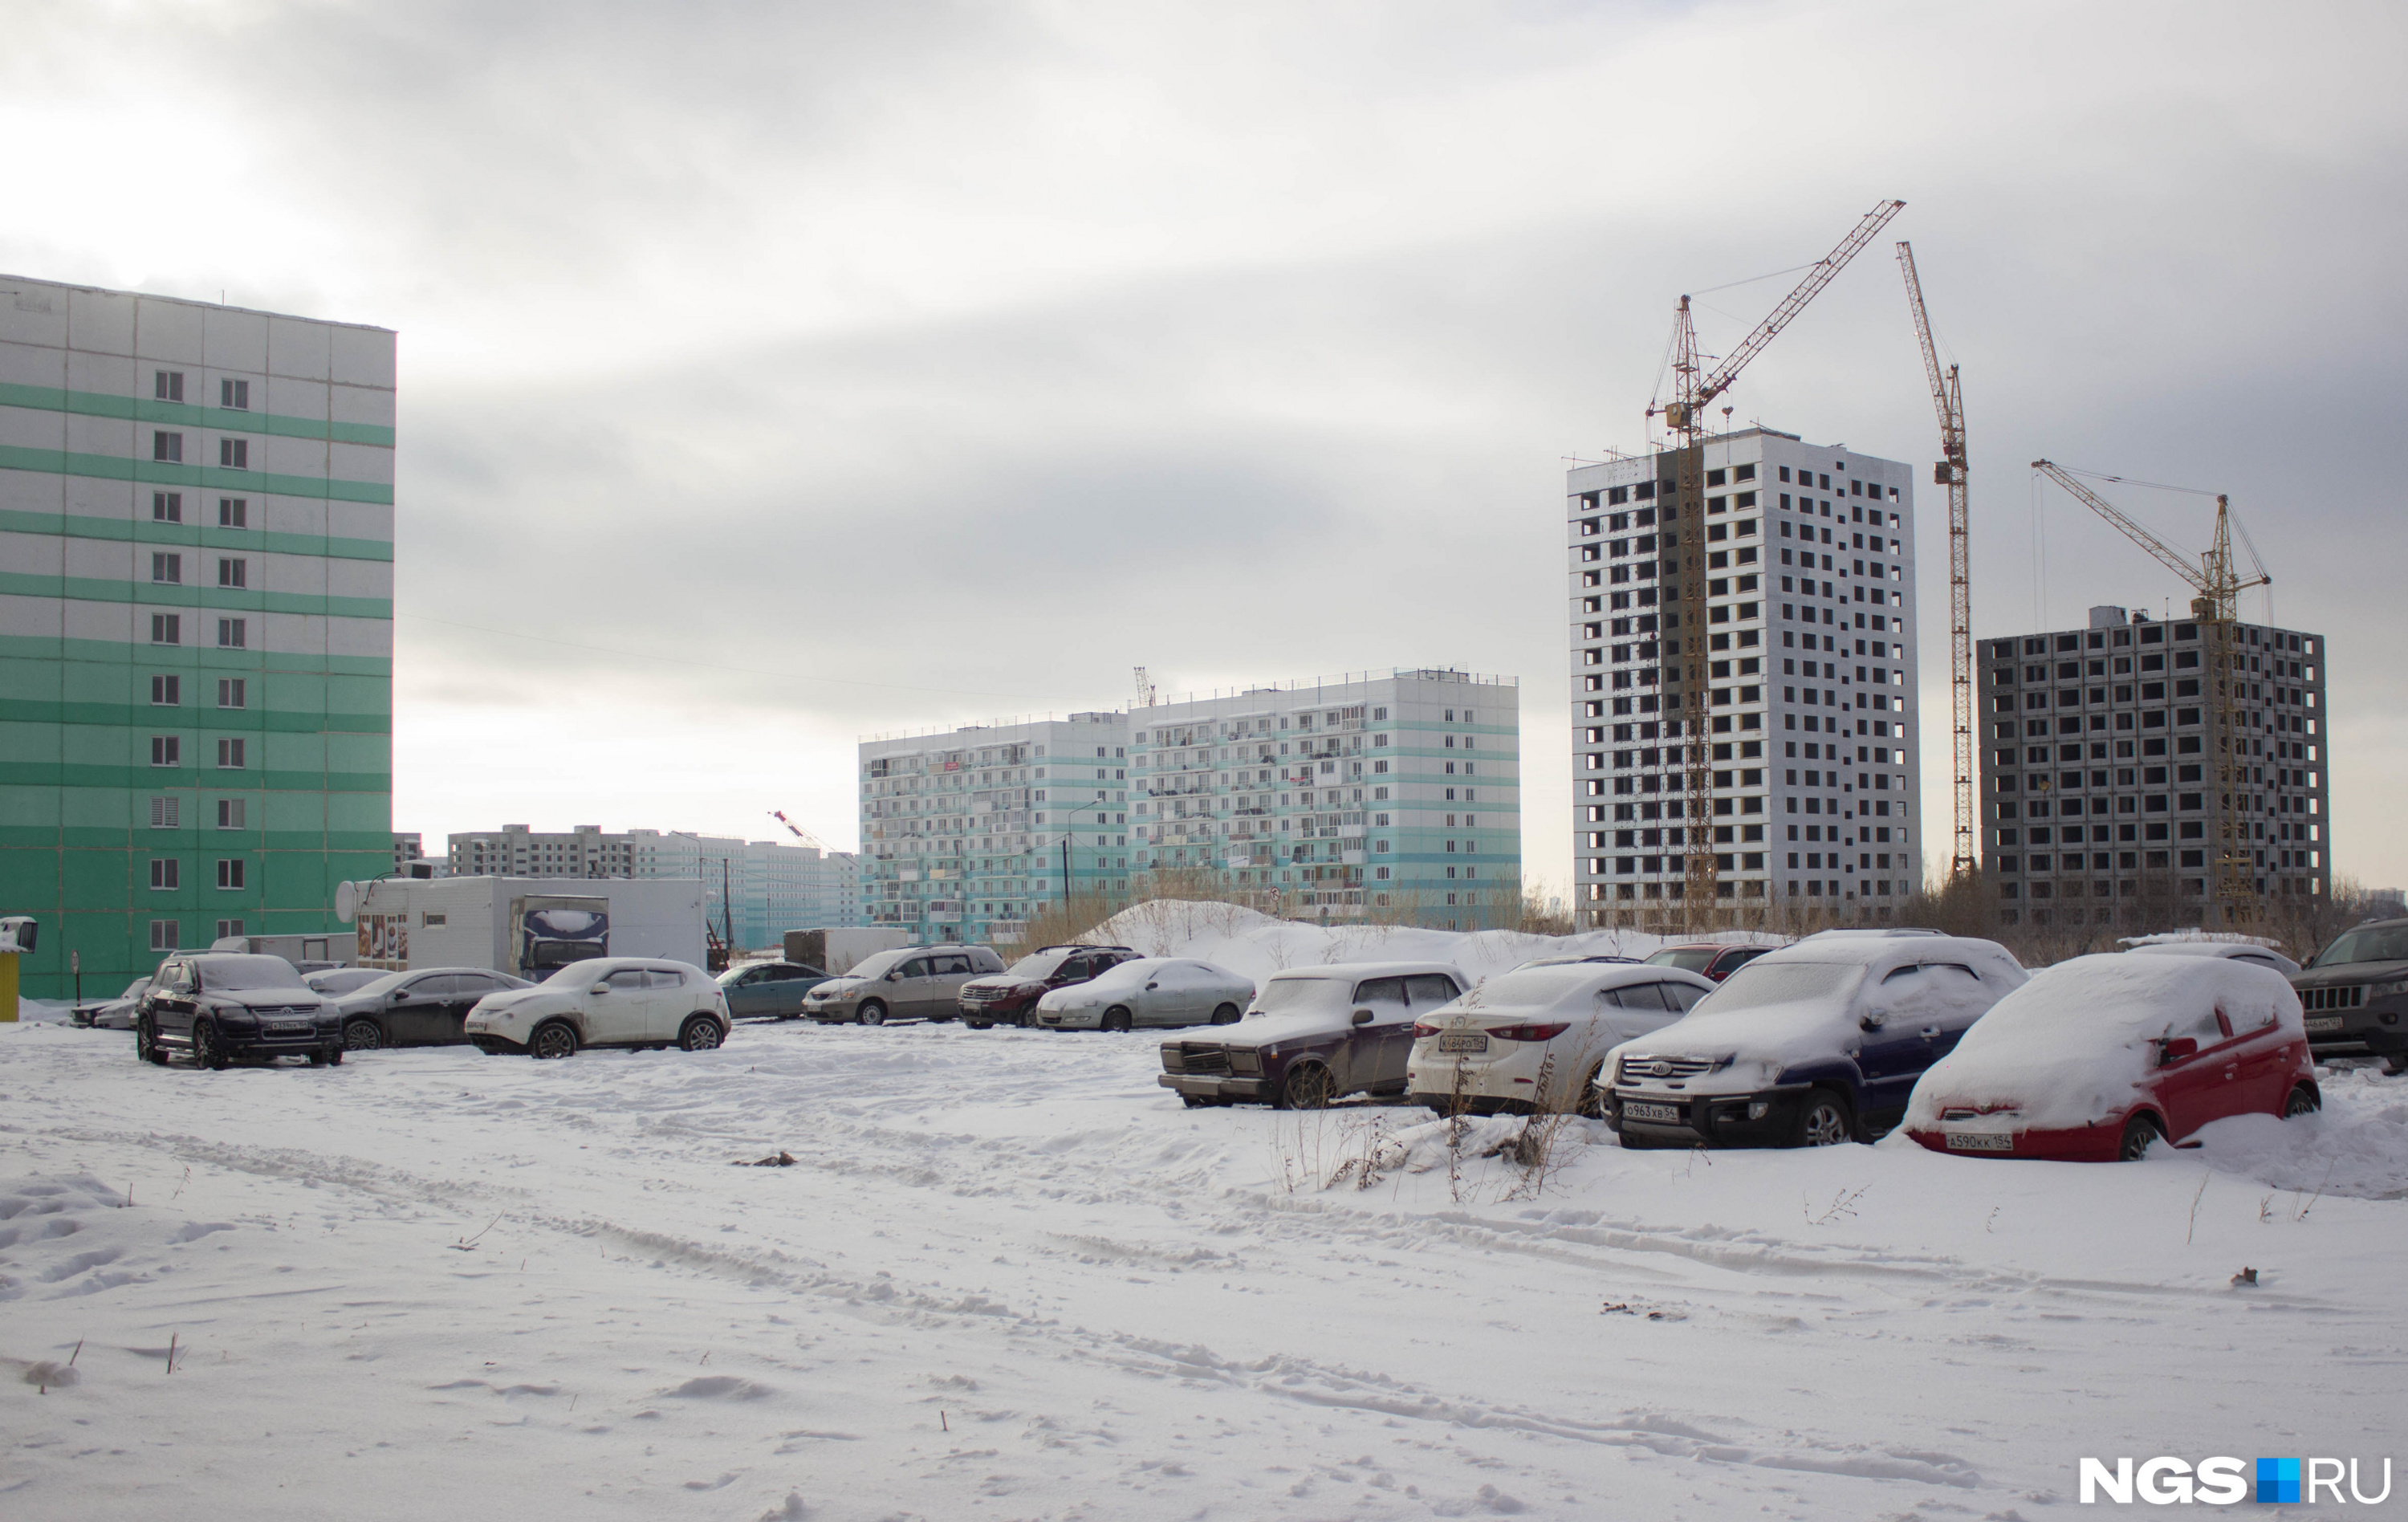 Легендарная парковка, которая появилась после критики политика Алексея Навального